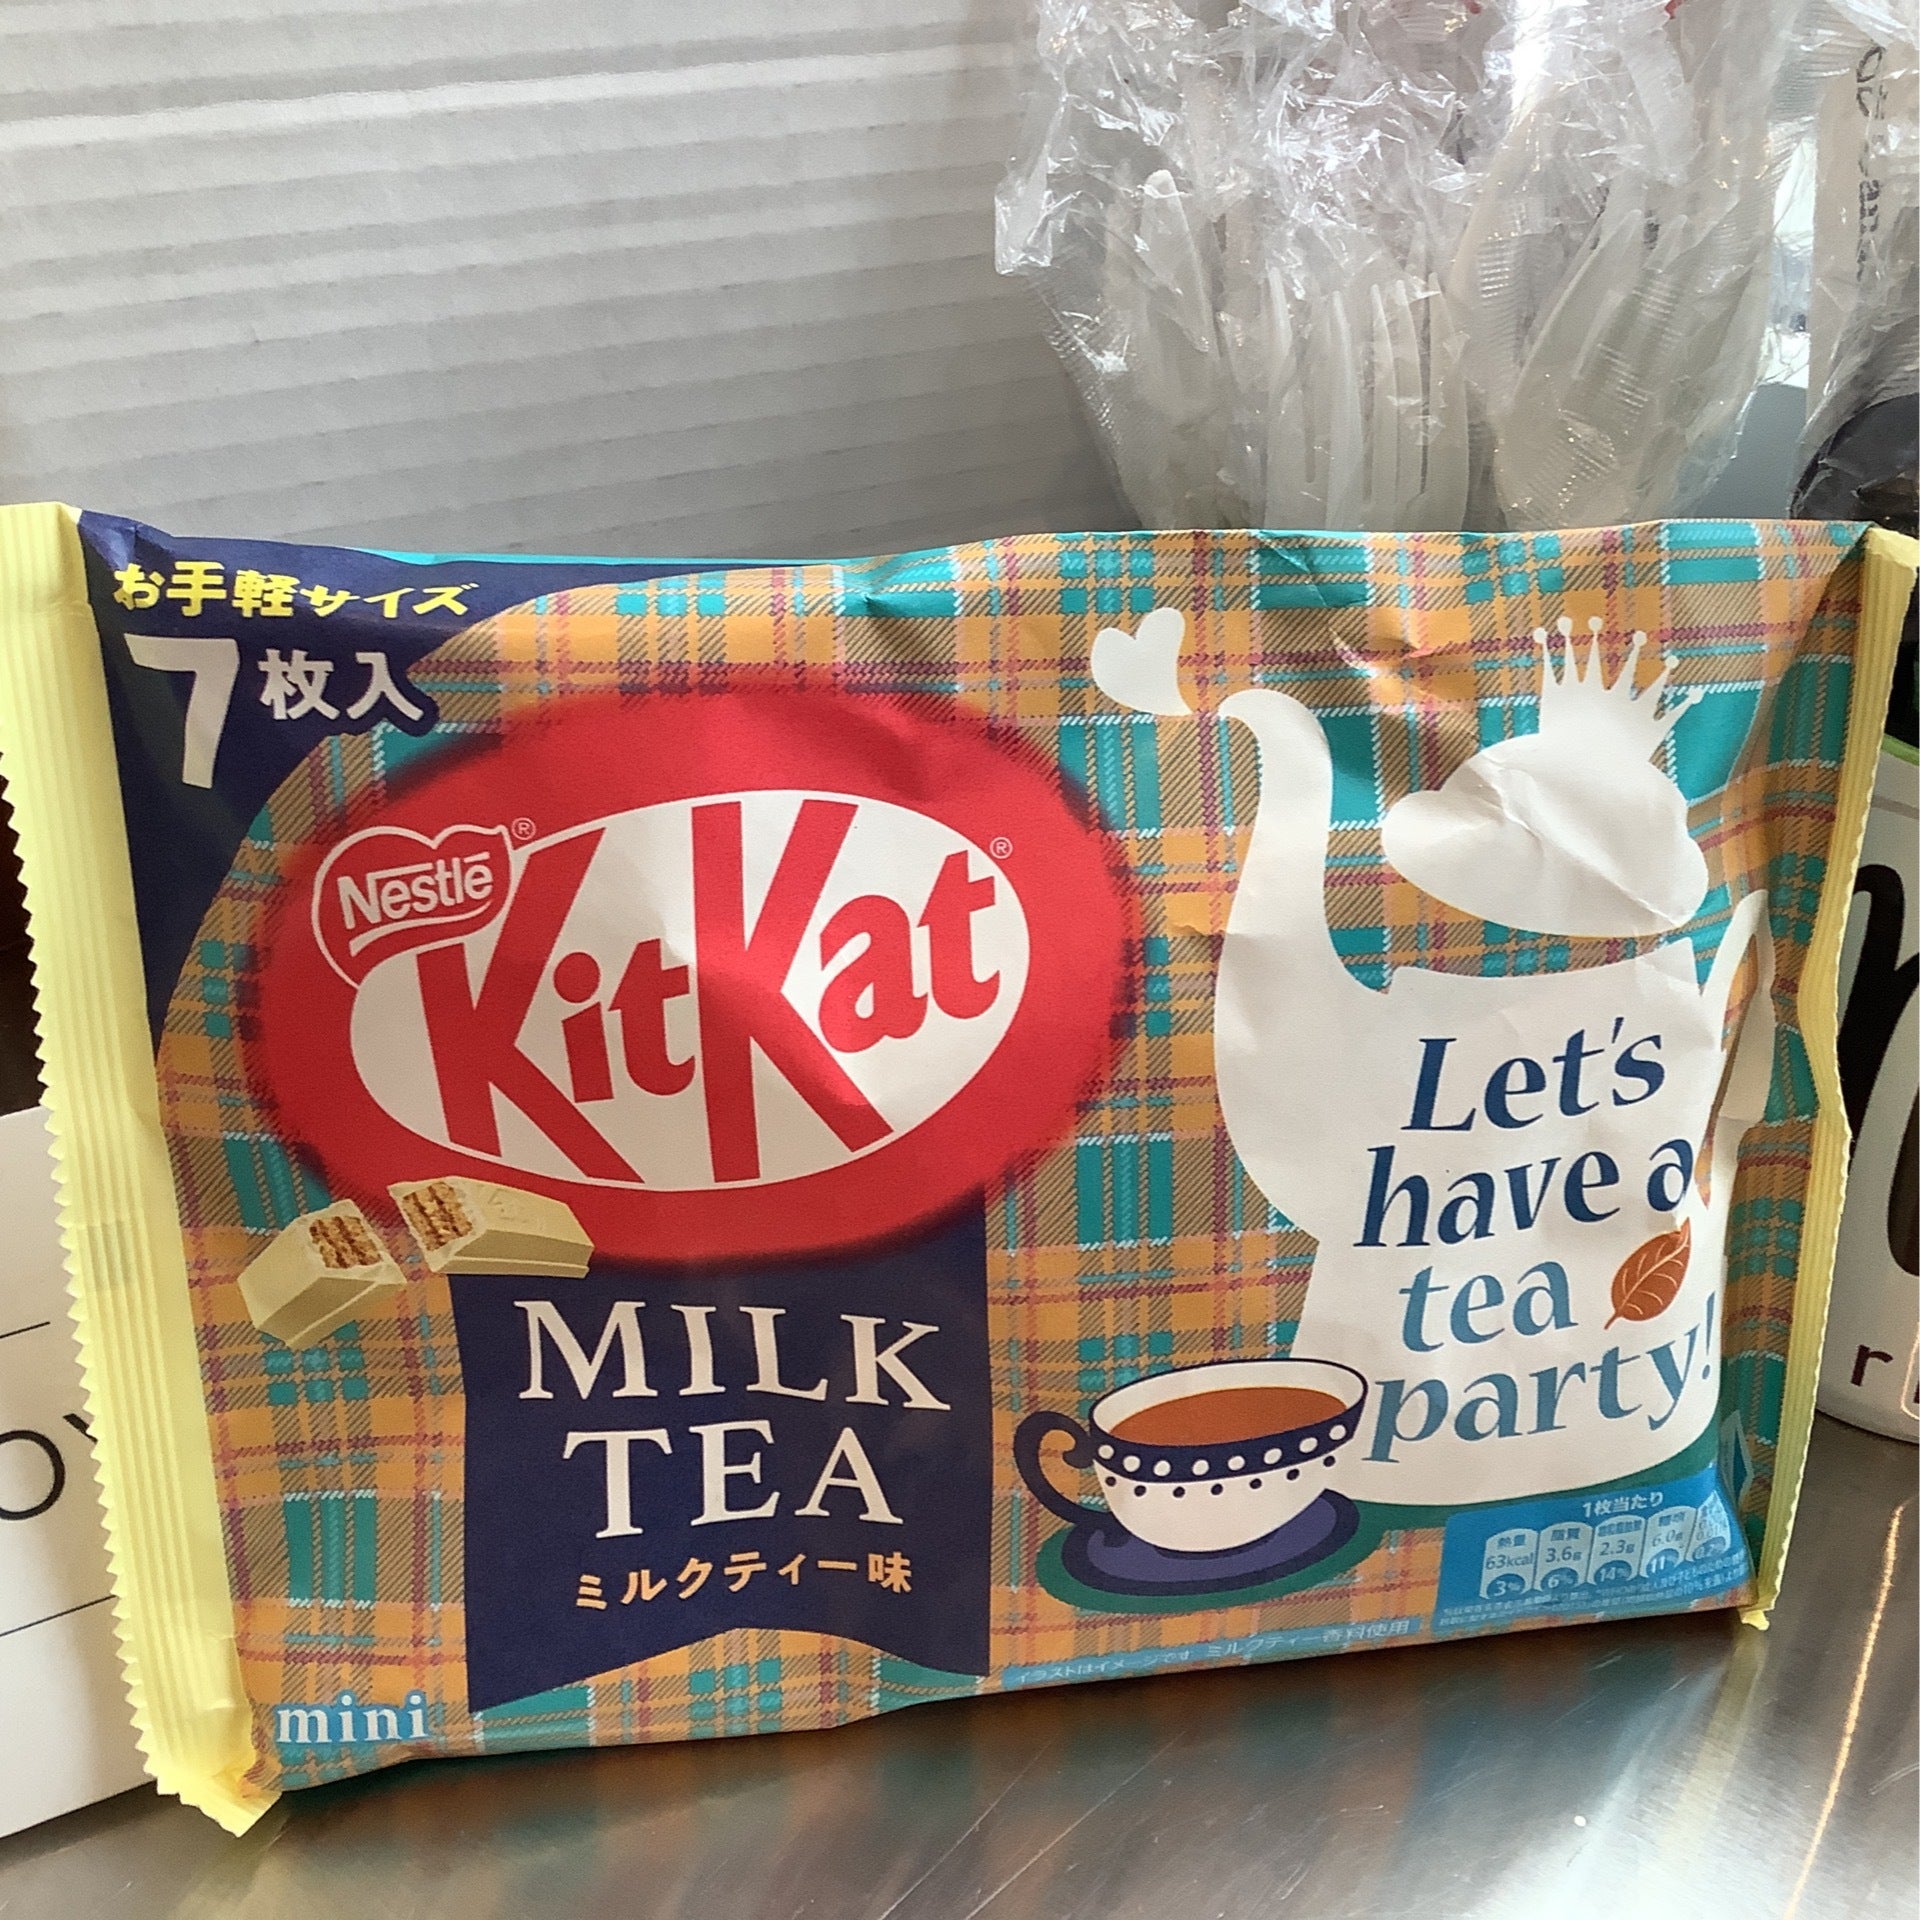 Mini Boba Tea Party Kit